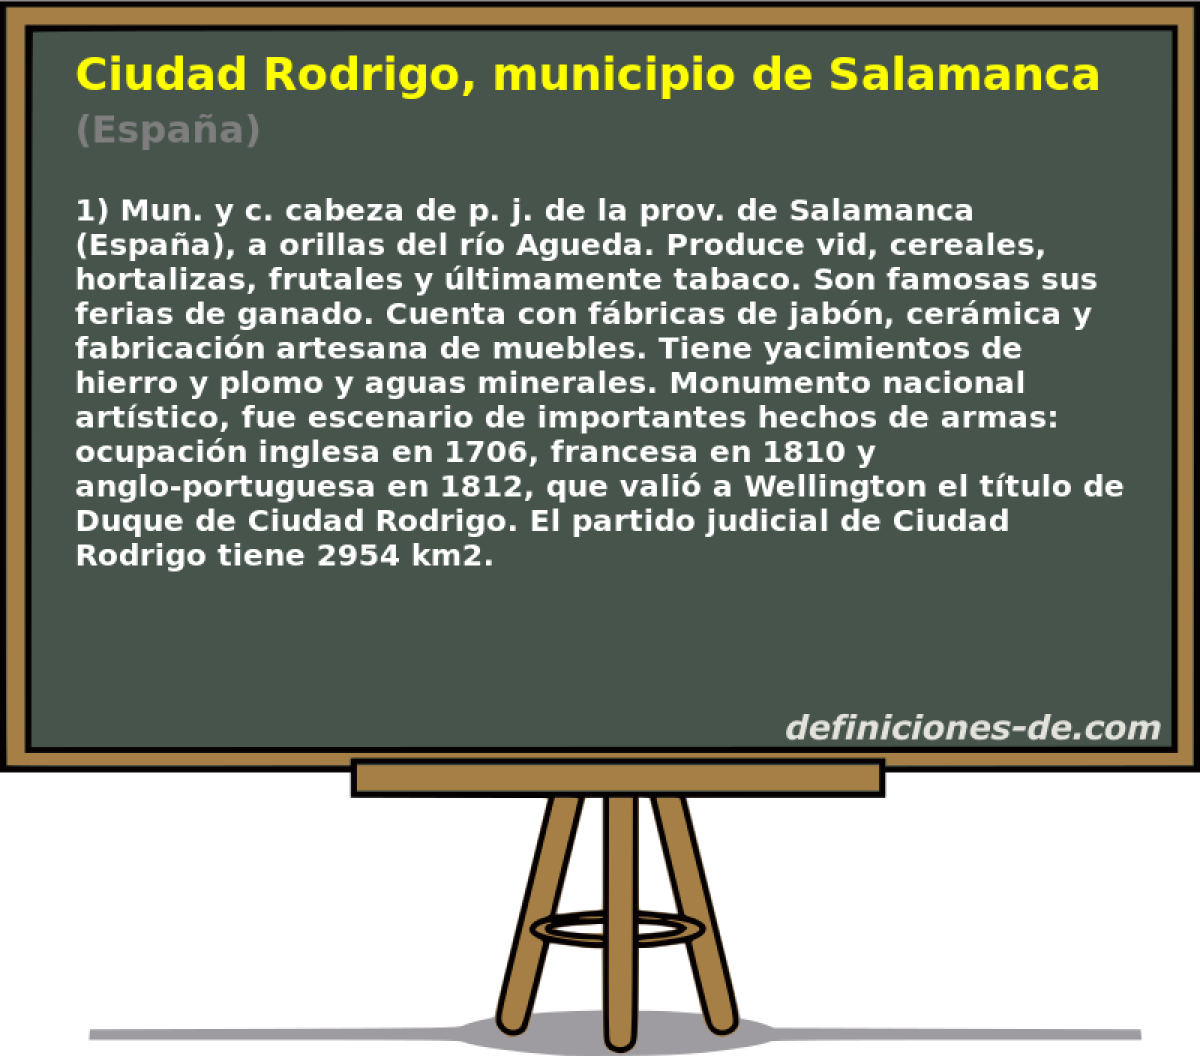 Ciudad Rodrigo, municipio de Salamanca (Espaa)